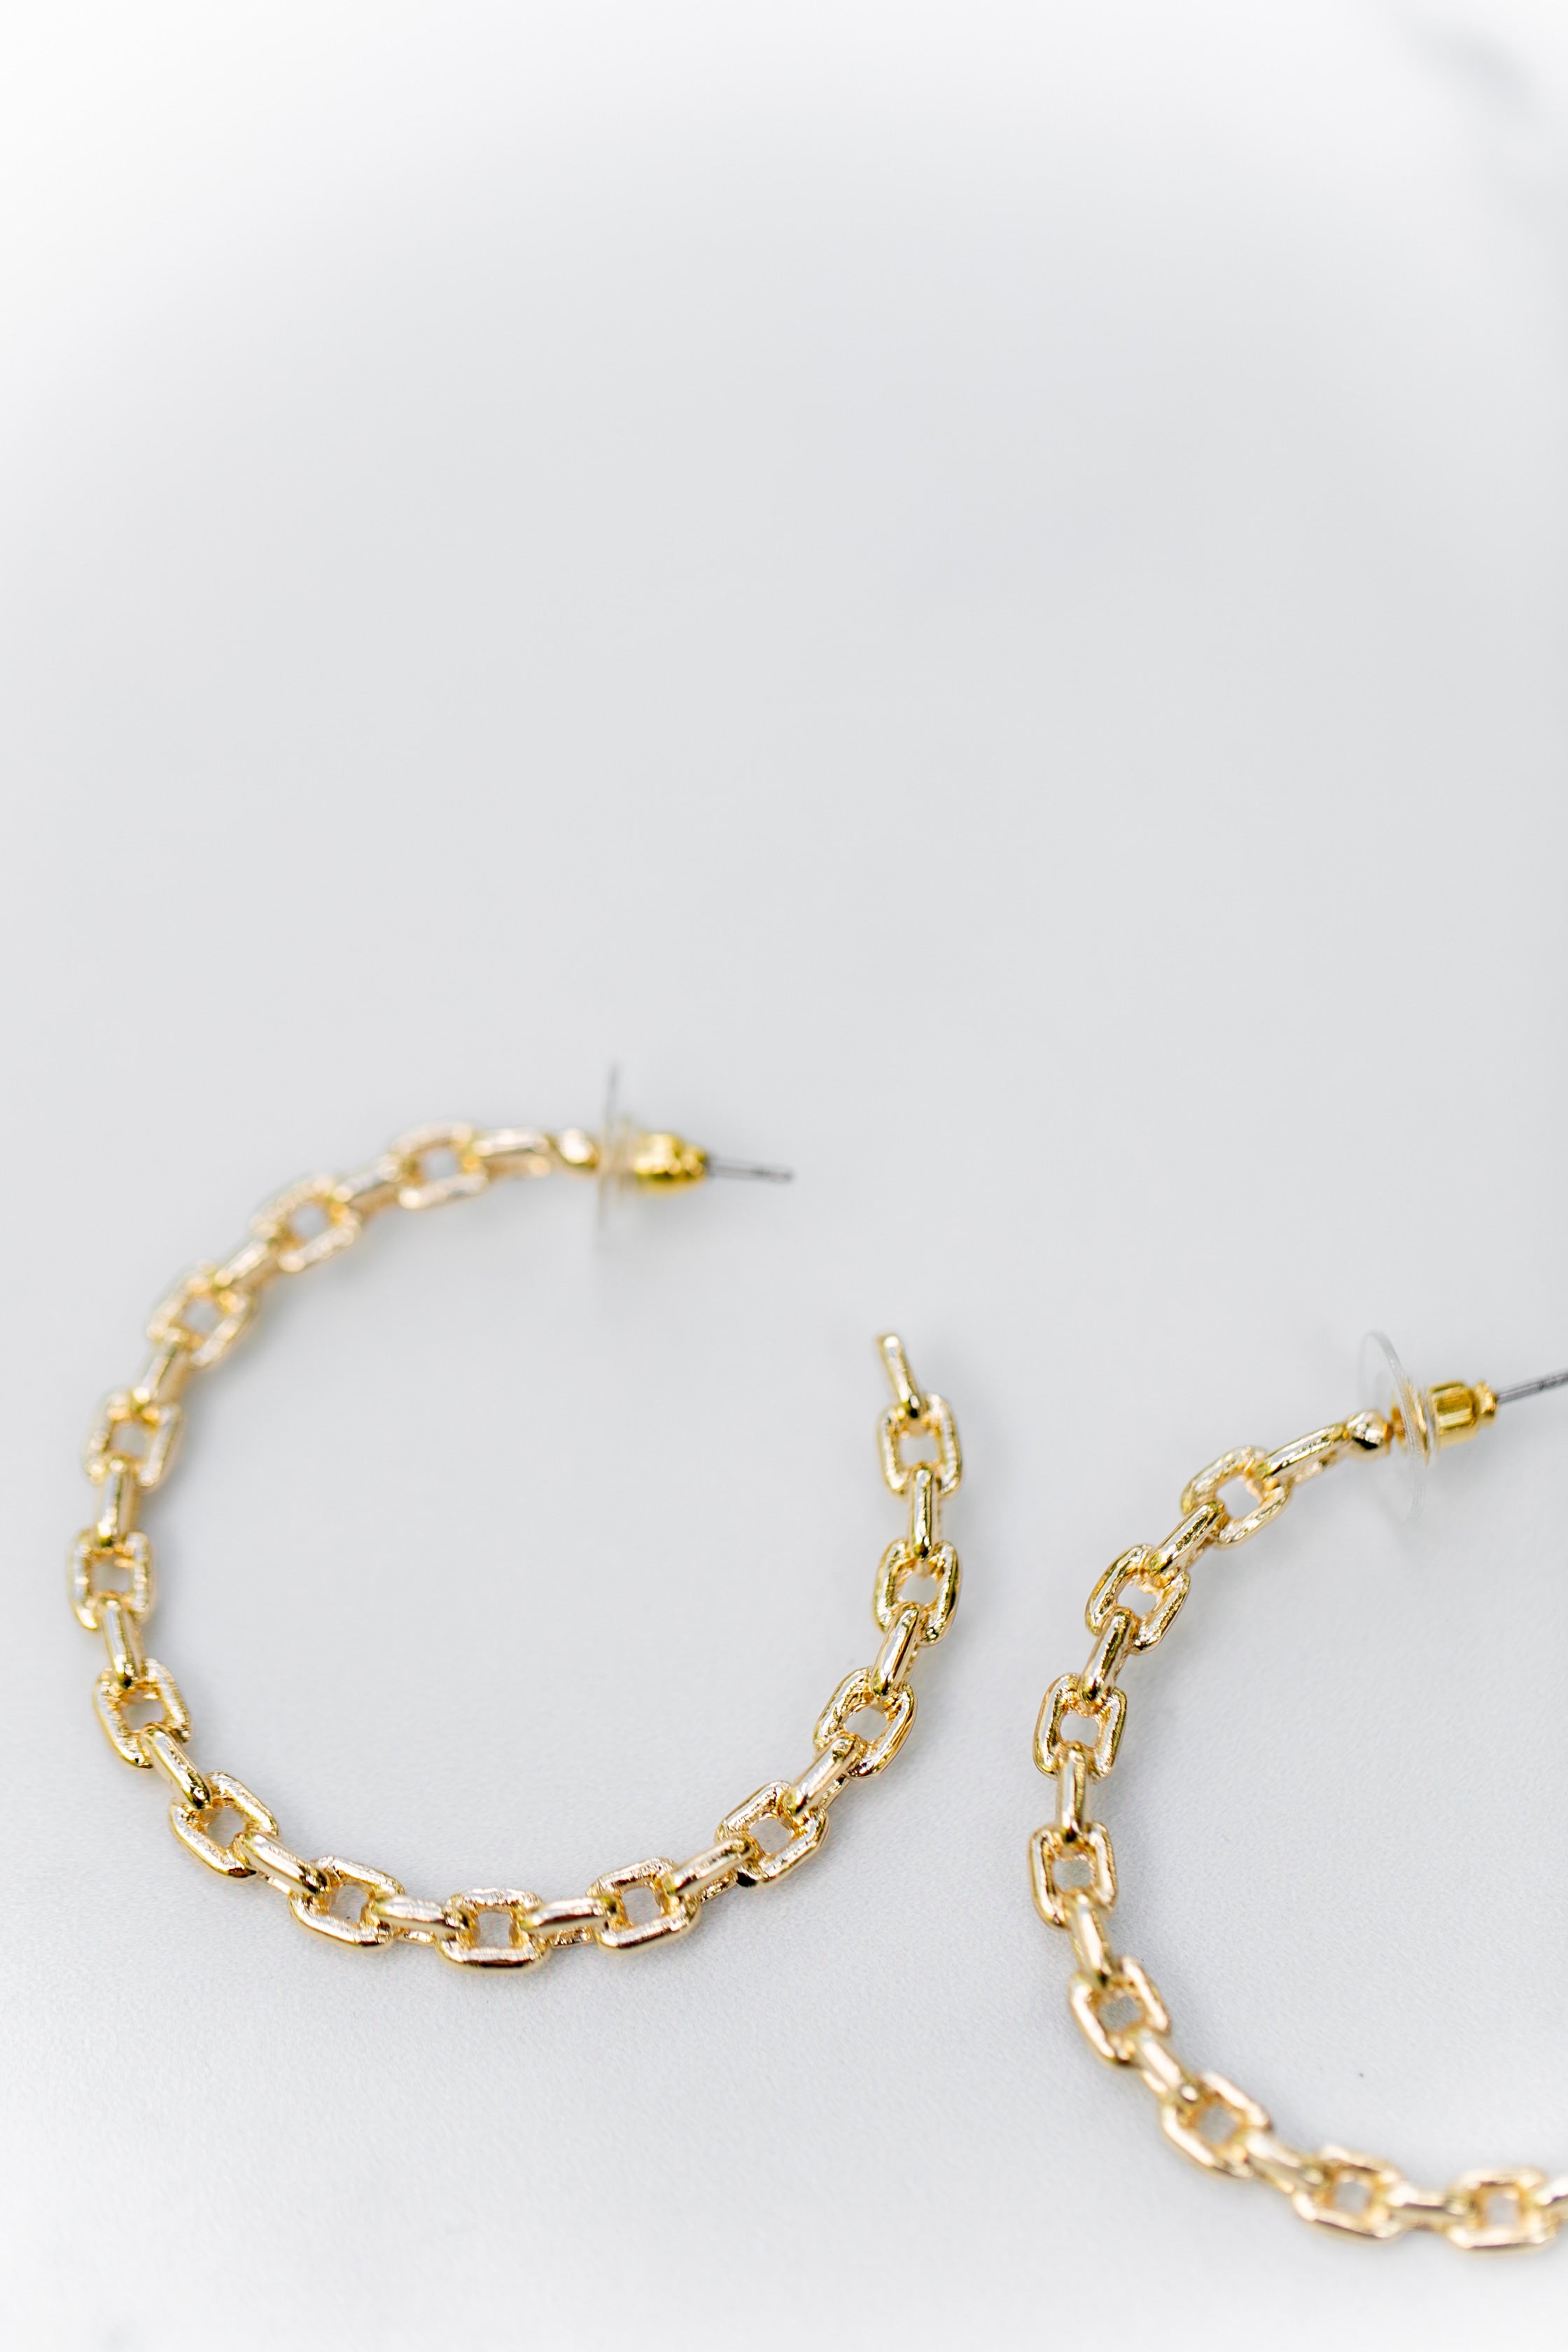 Luxury Stud big gold hoop Earring … curated on LTK